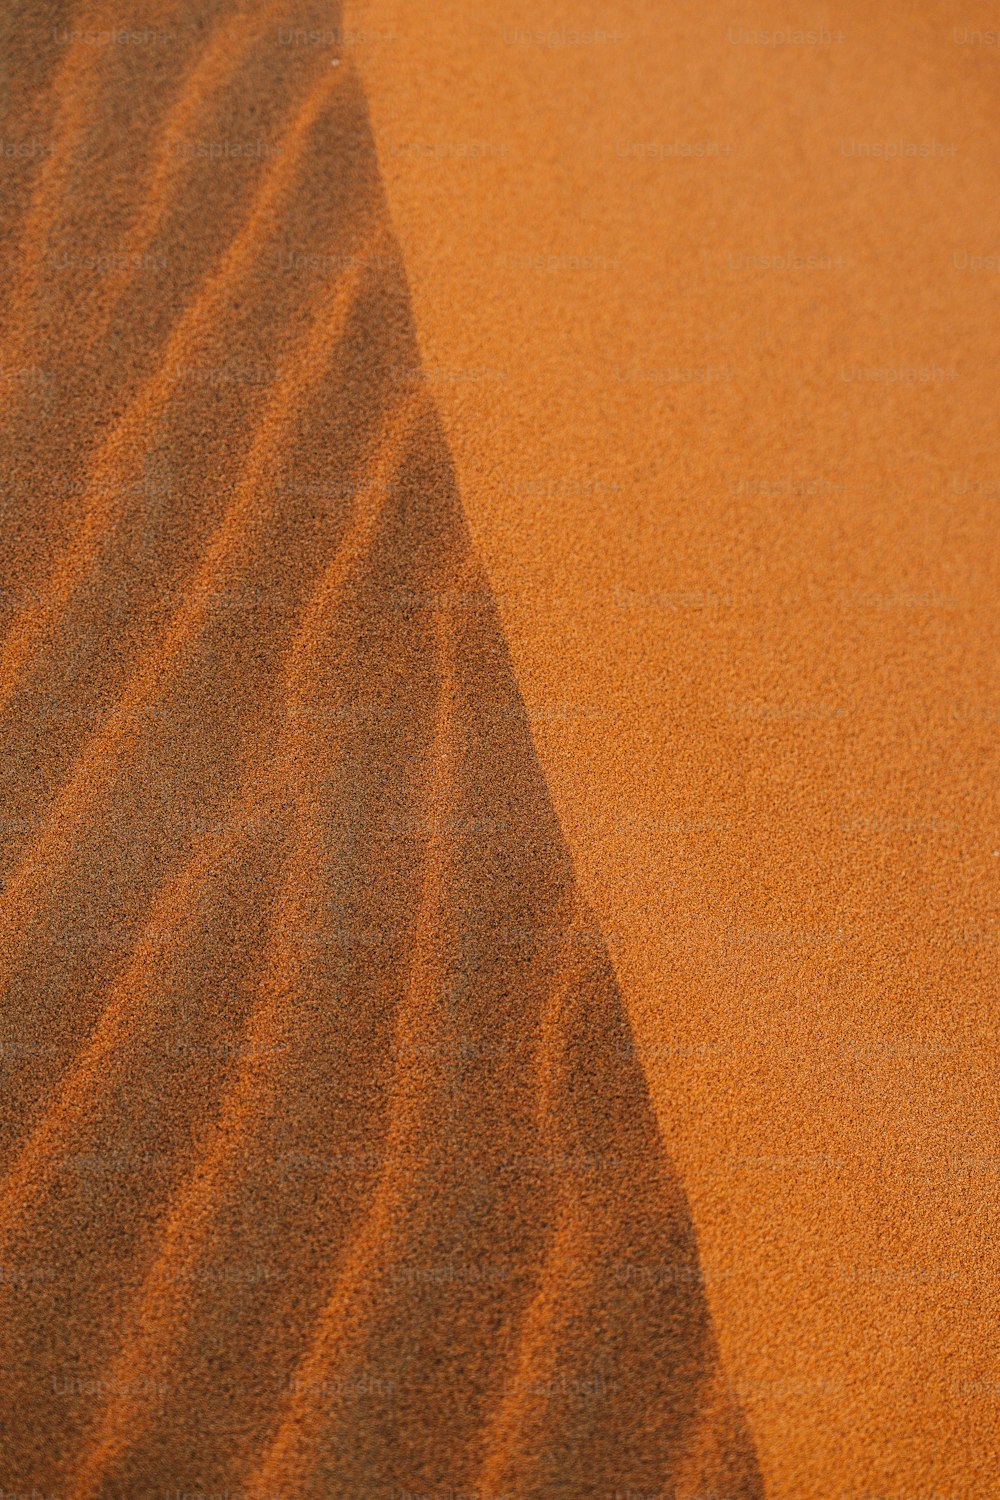 Une scène désertique avec une dune de sable au loin